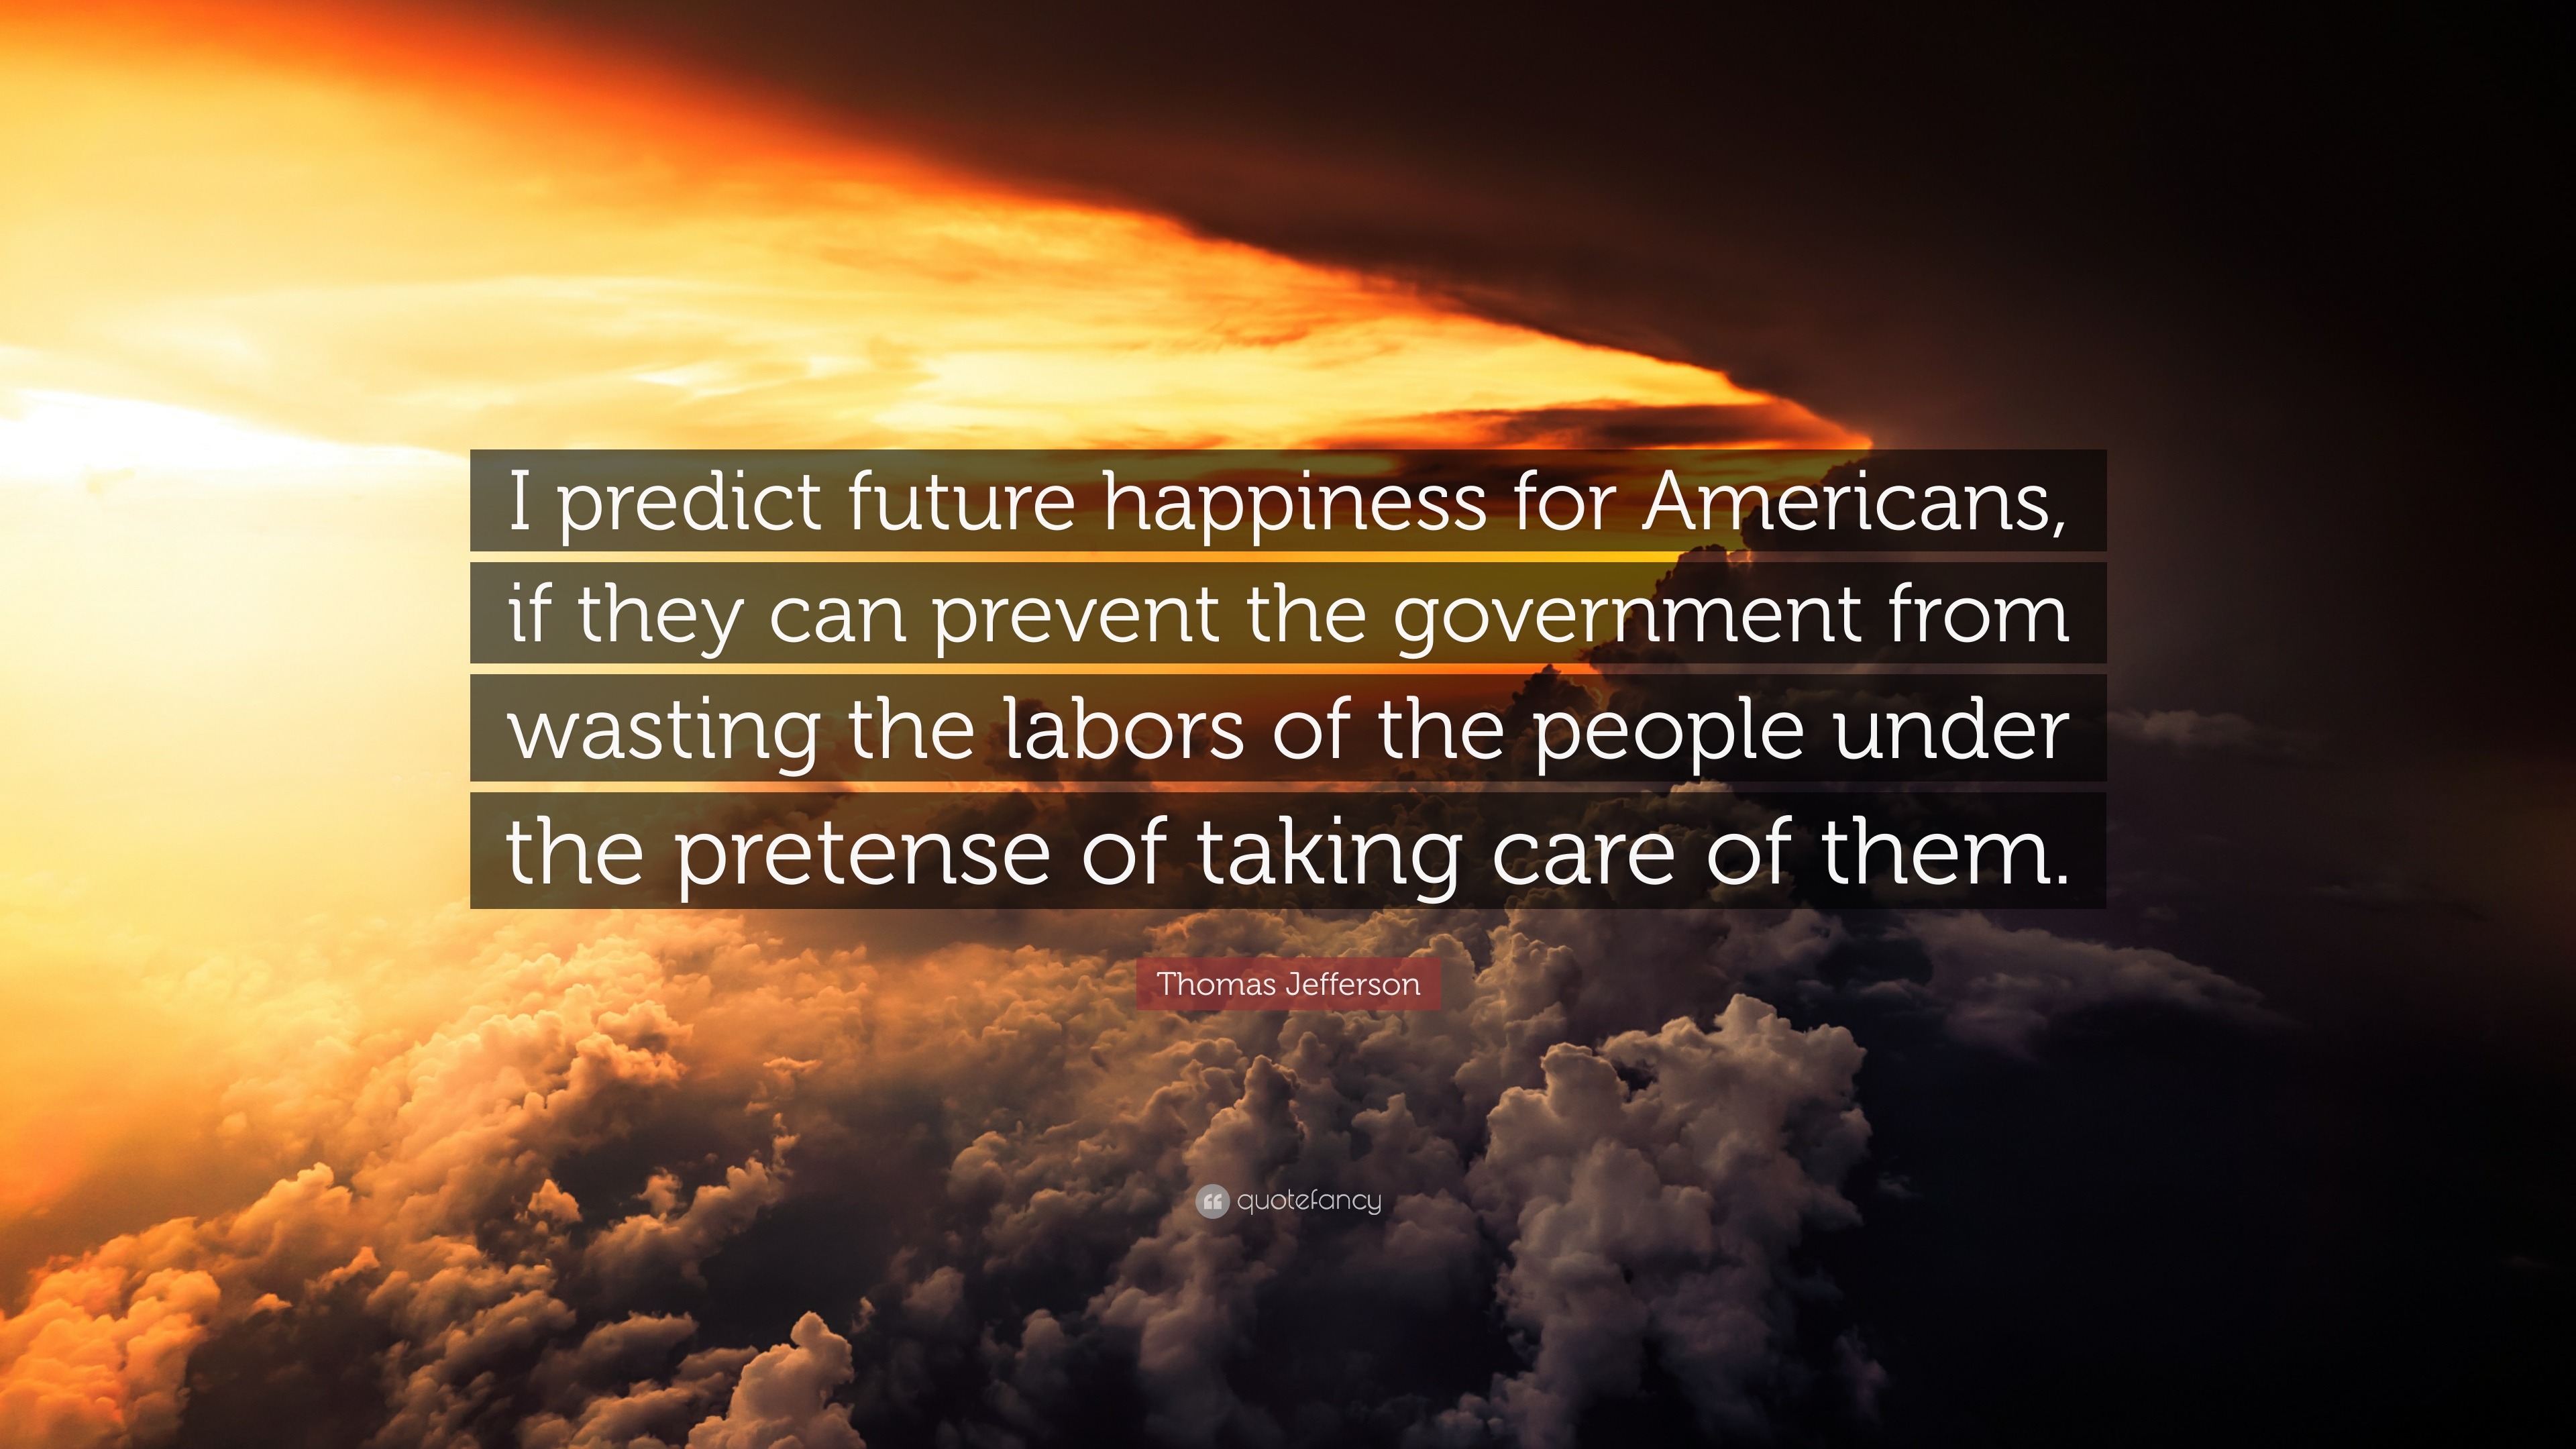 Thomas Jefferson Quote “I predict future happiness for